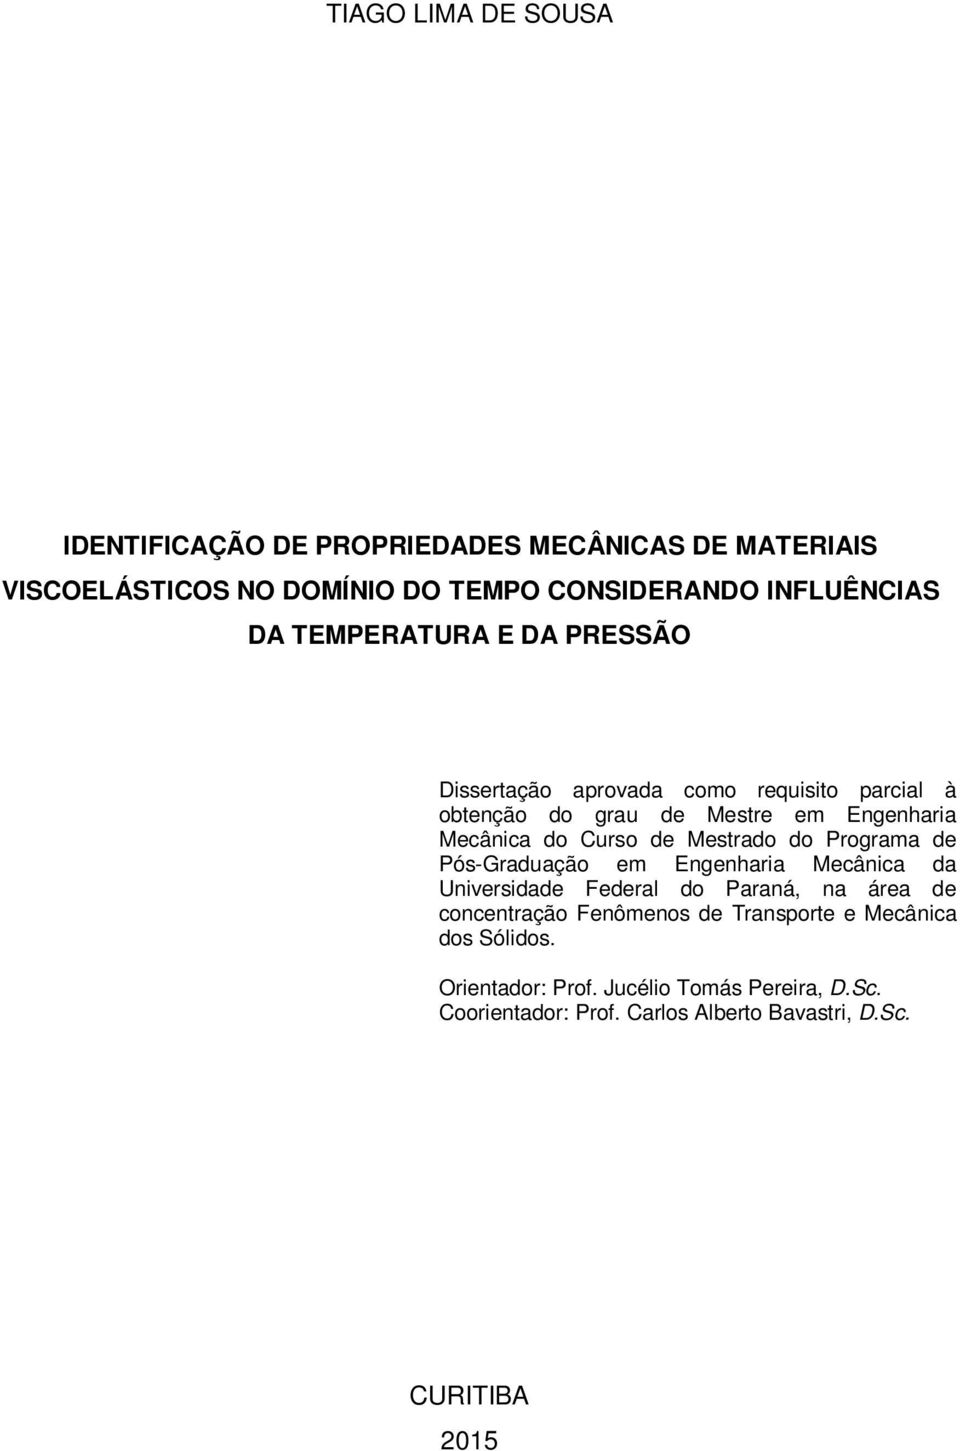 Mestrado do Programa de Pós-Graduação em Engenharia Mecânica da Universidade Federal do Paraná, na área de concentração Fenômenos de